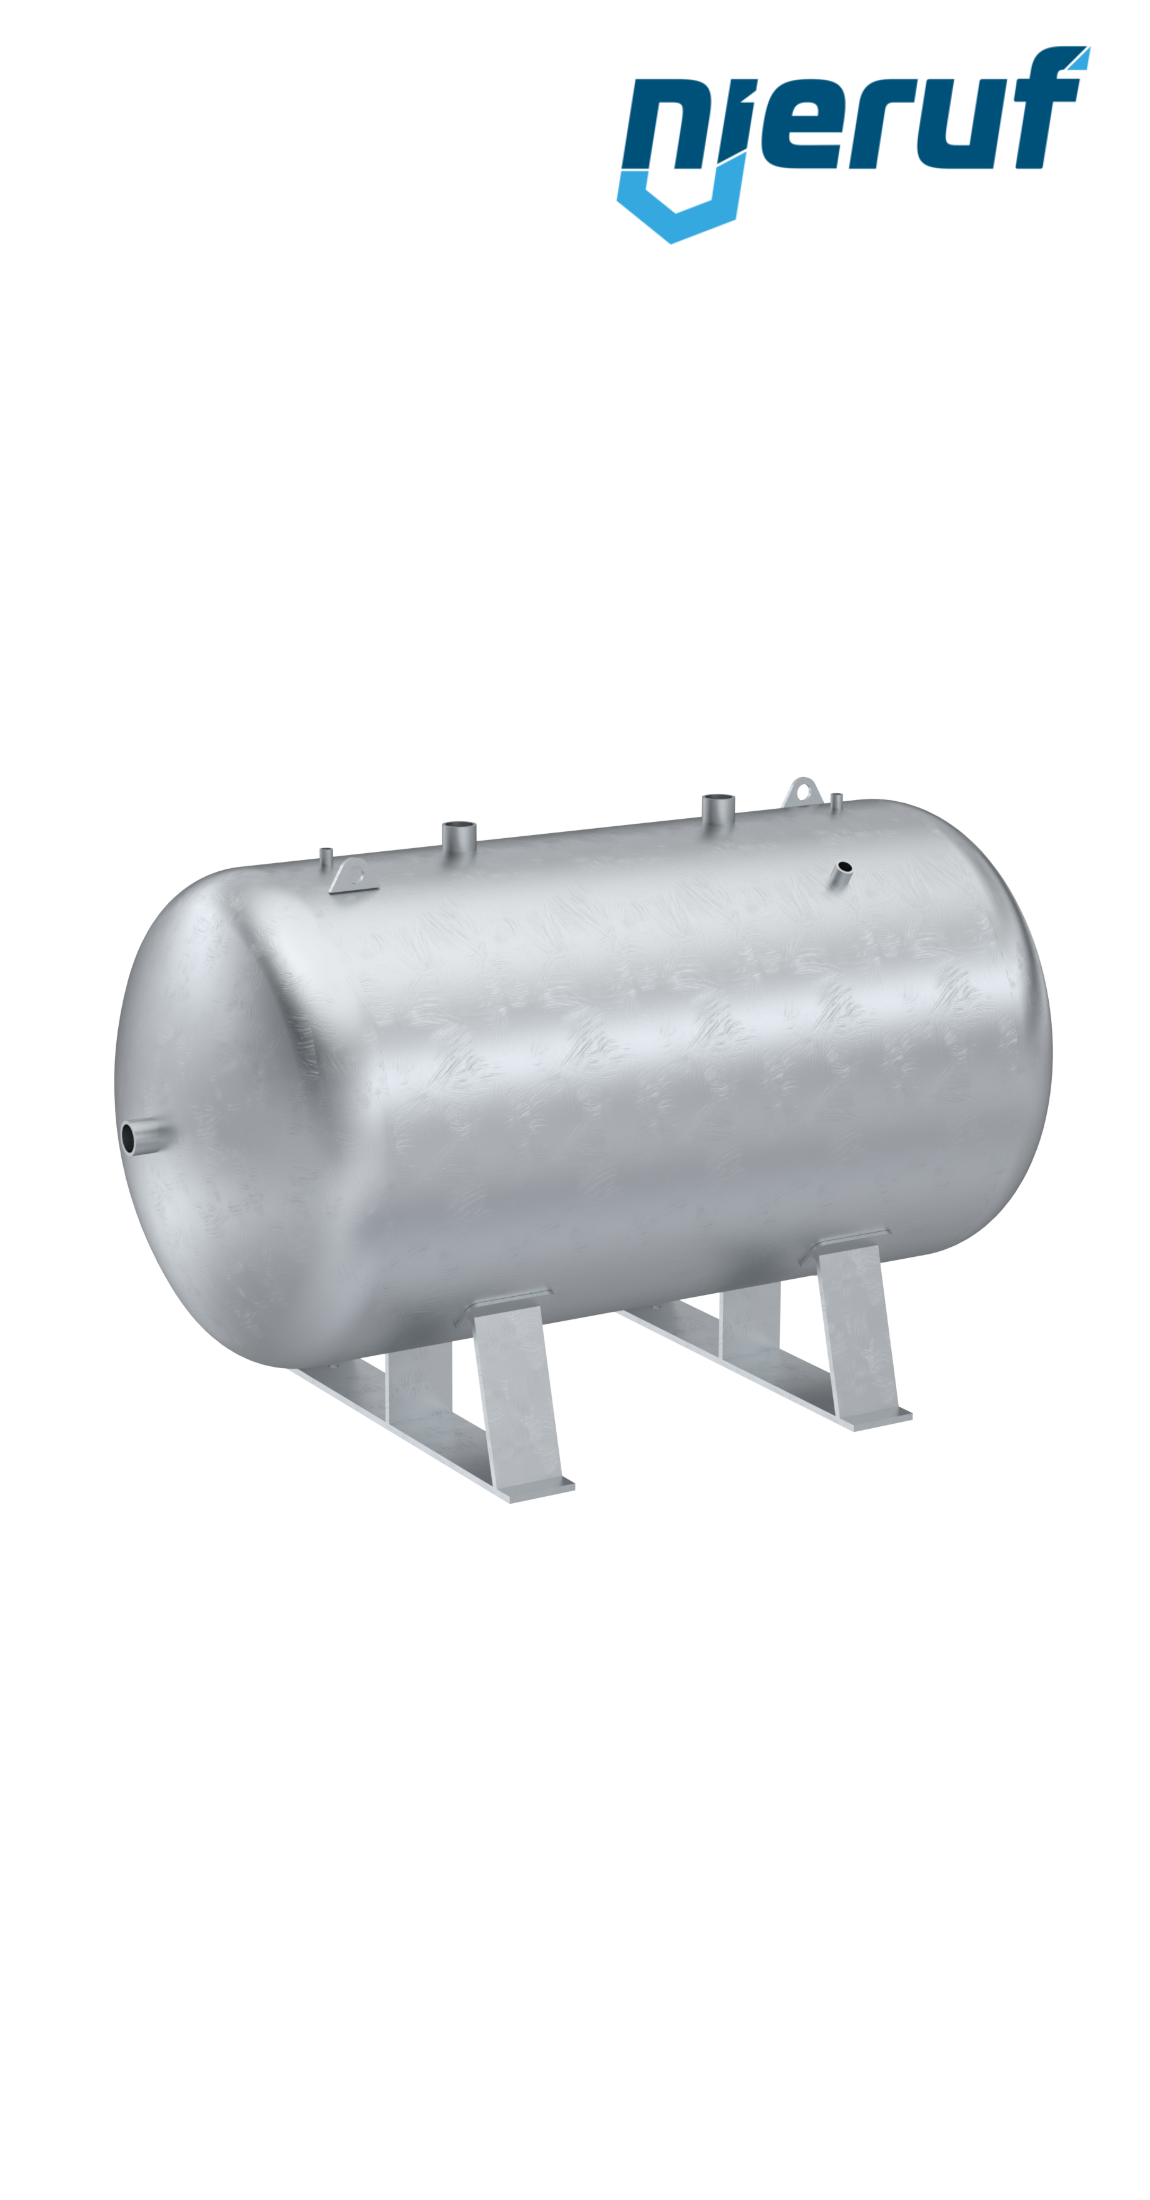 Serbatoi per alta pressione orizzontale BE02 2000 litri, 0-36 bar, acciaio primerizzato